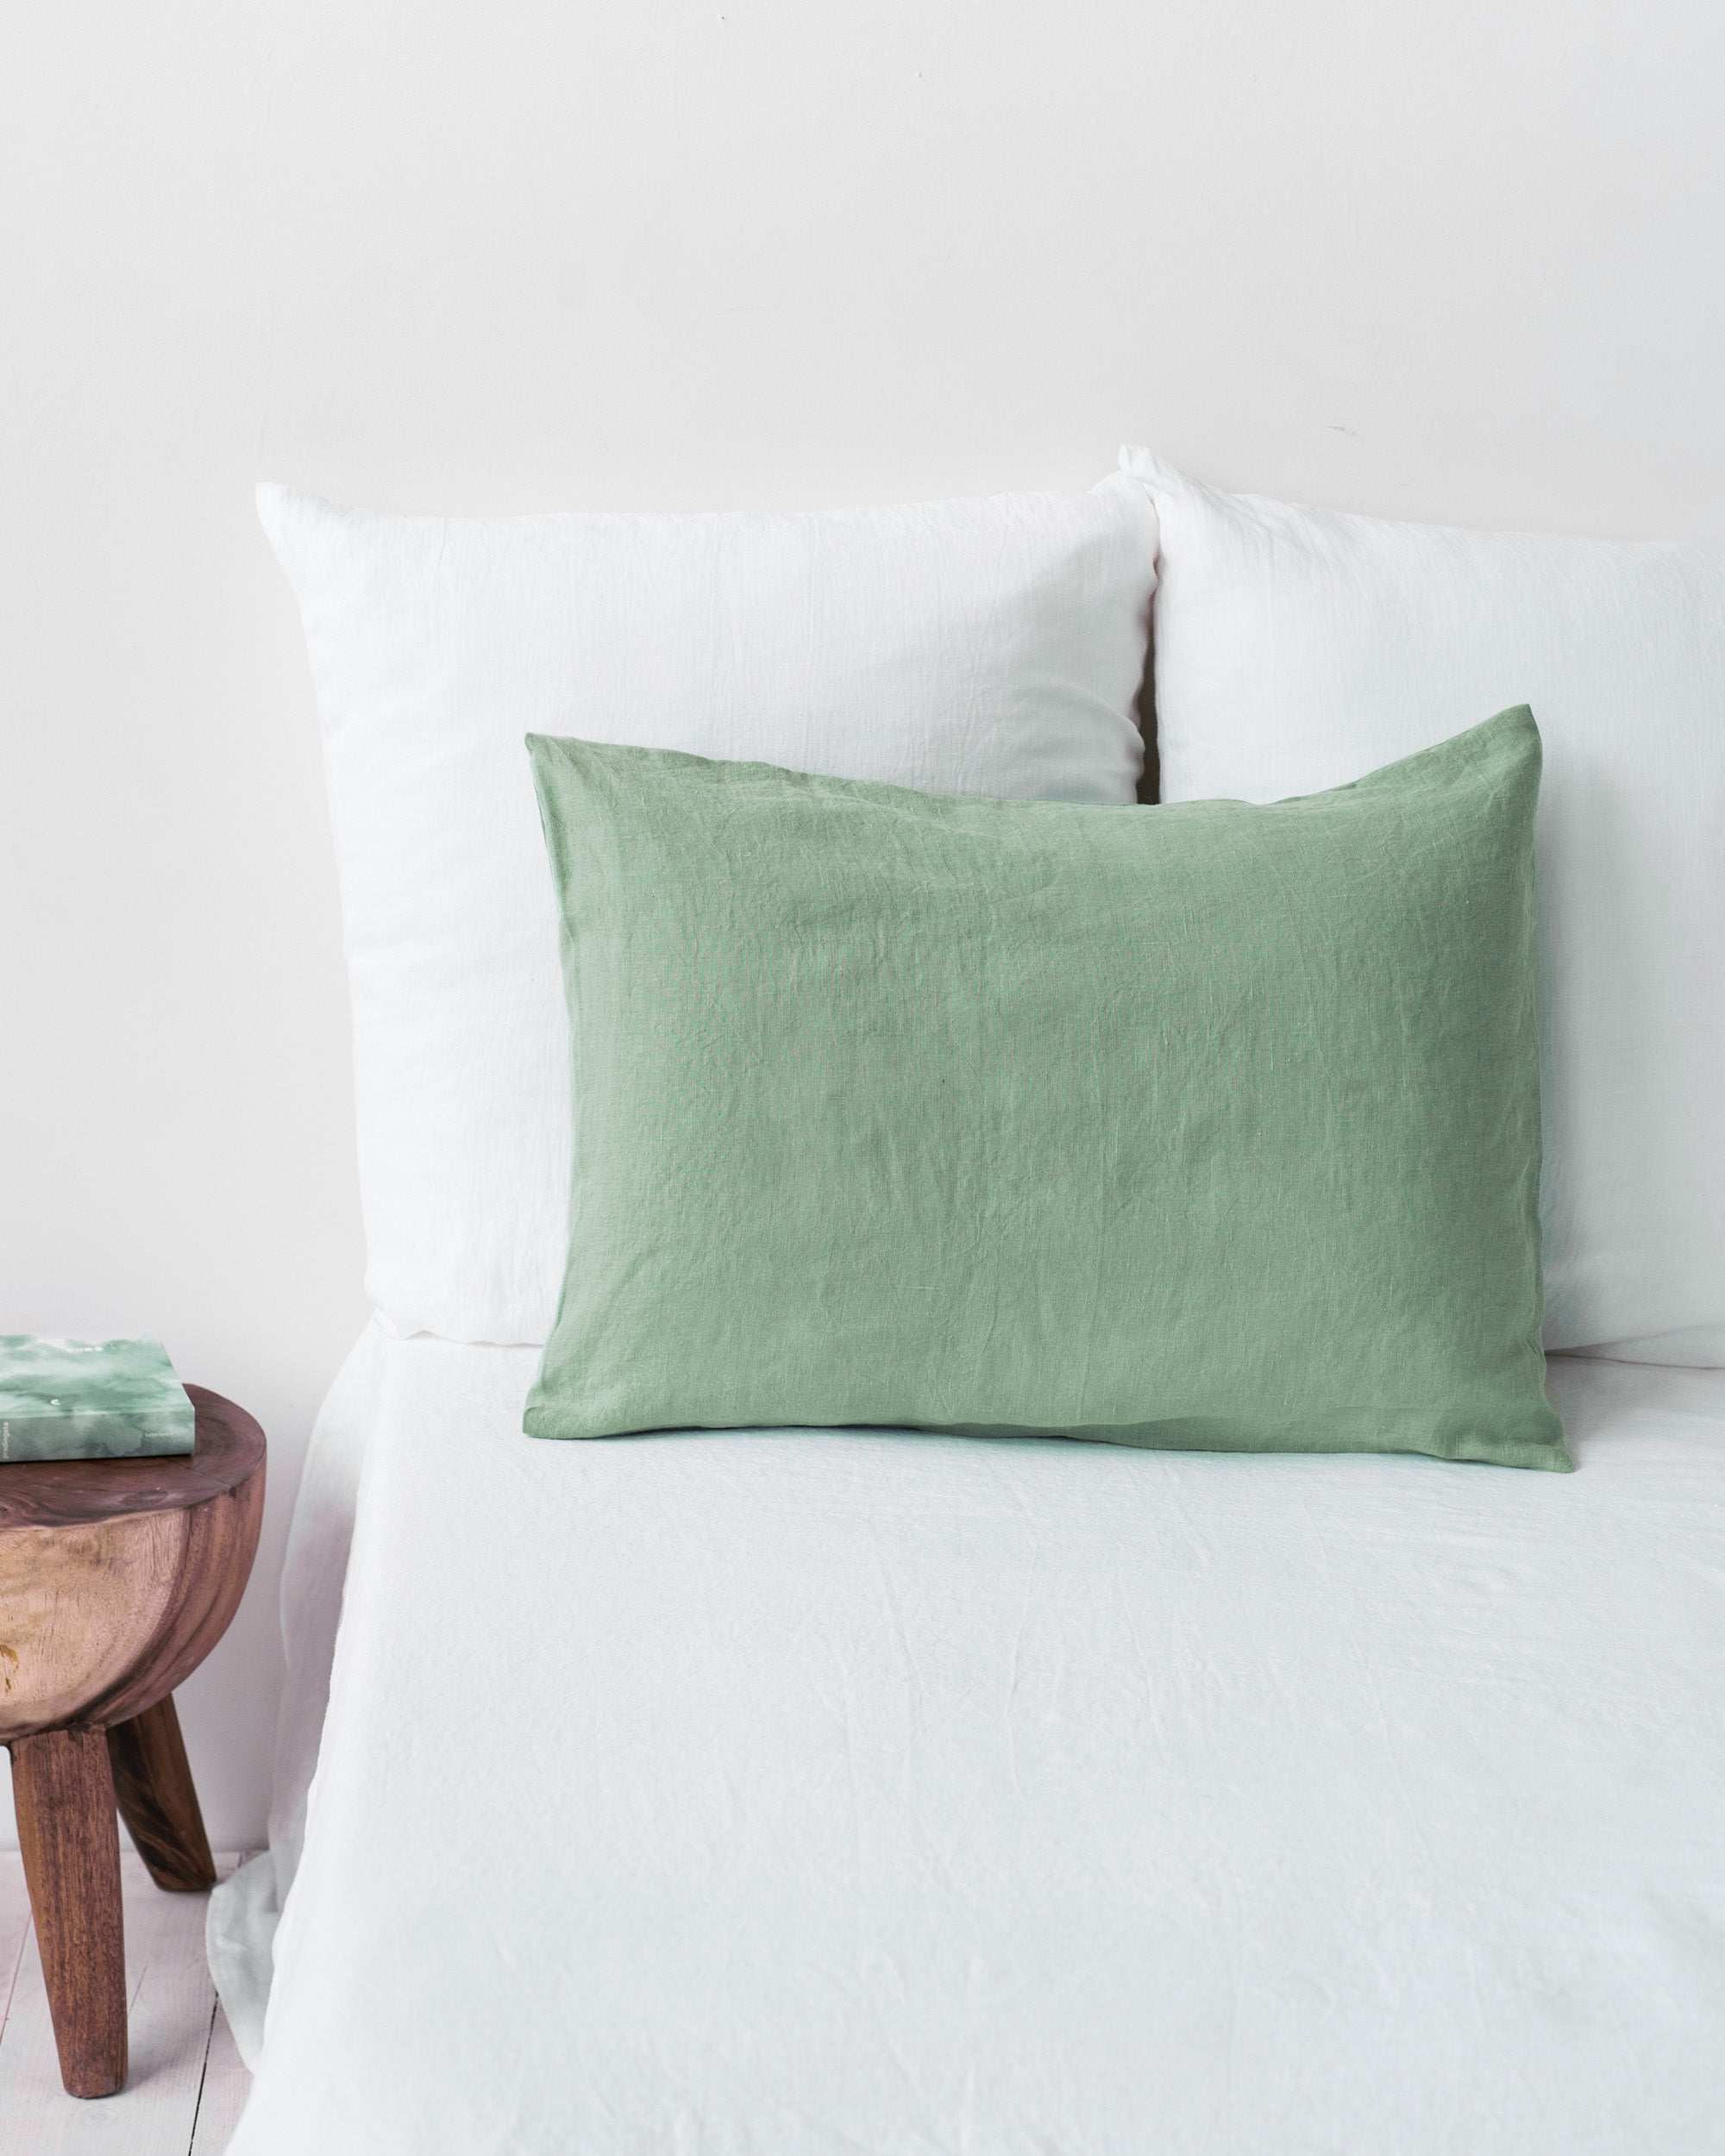 Matcha Green Linen Pillow Cover | MagicLinen